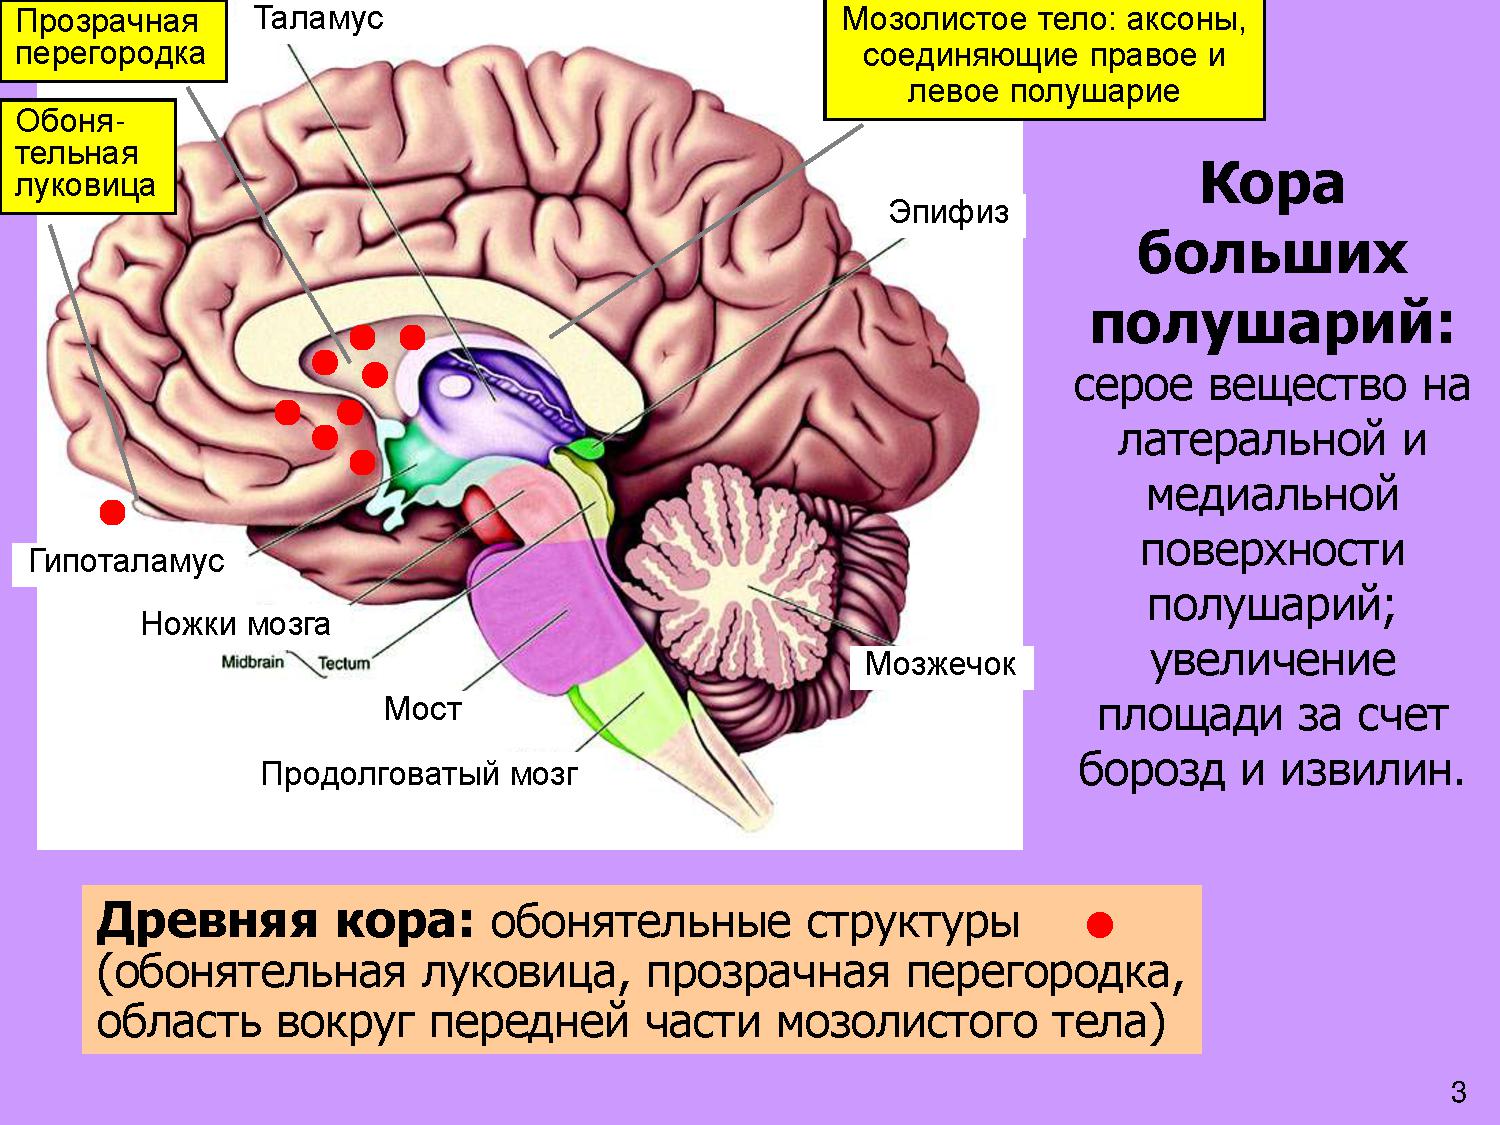 Появление коры мозга. Мозолистое тело конечного мозга функции. Прозрачная перегородка мозга анатомия. Строение мозолистого тела головного мозга. Таламус, гипоталамус, мост, мозжечок, продолговатый мозг..